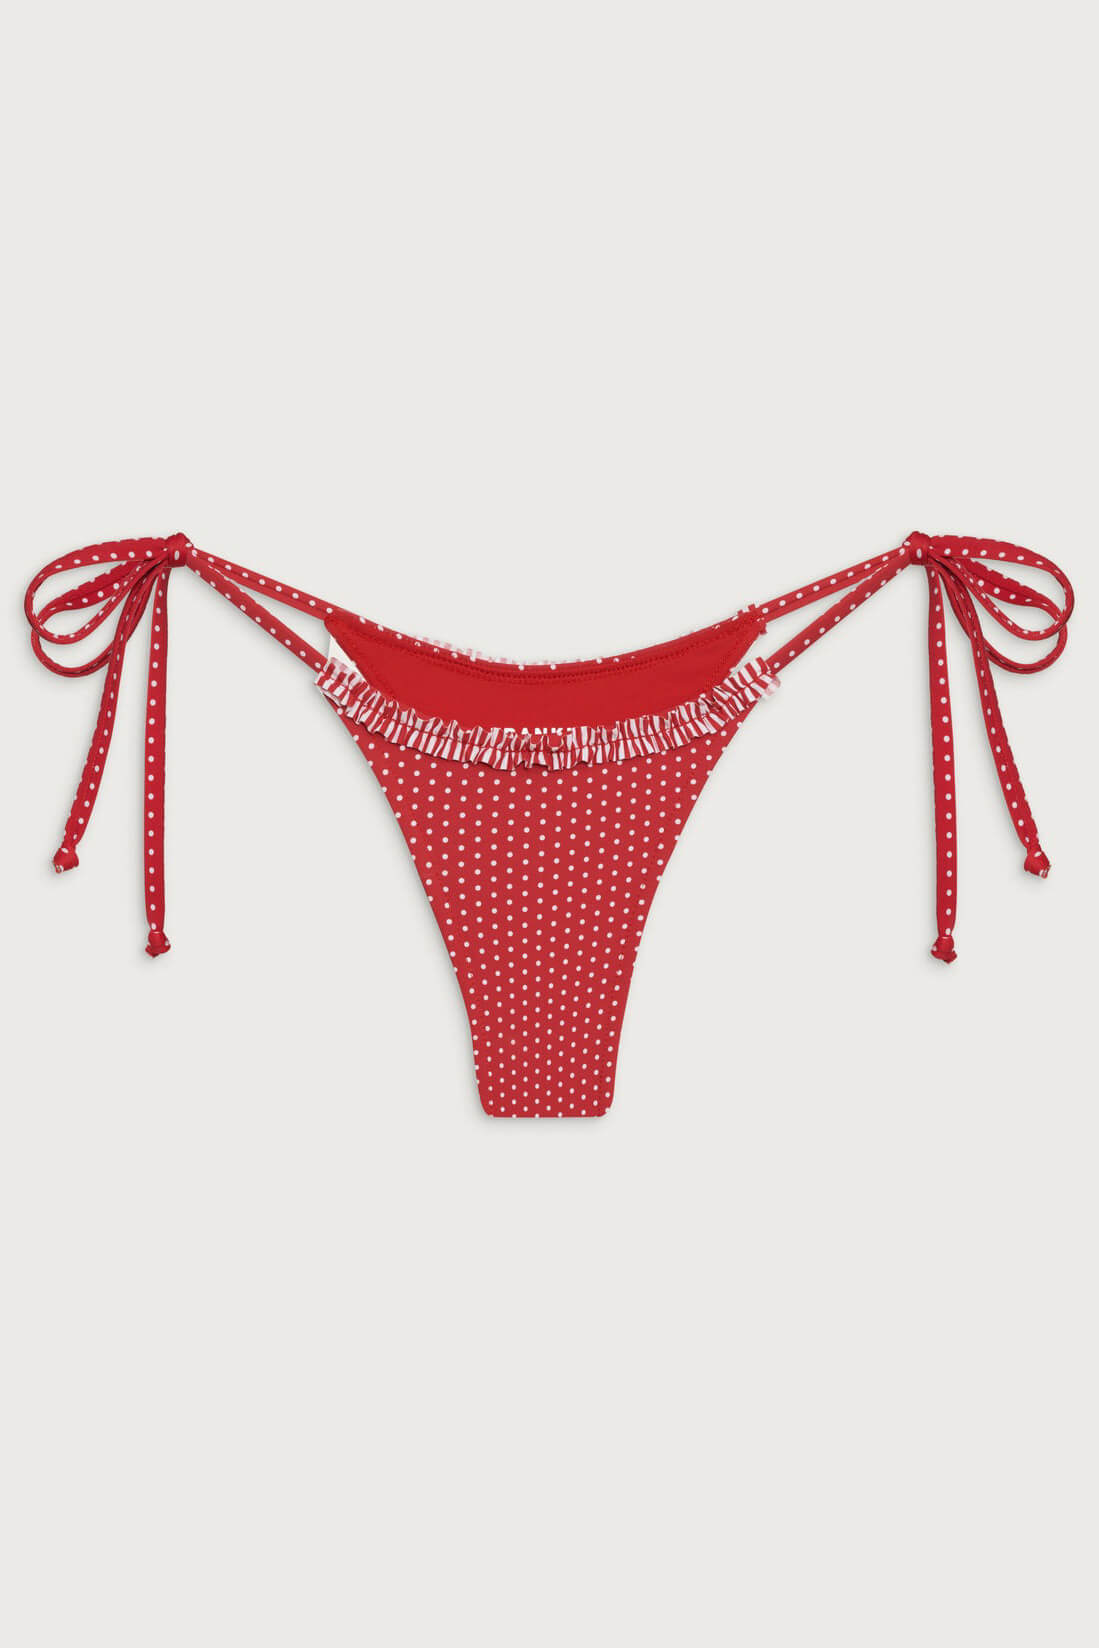 Frankies Bikinis divine bottom in scarlet dot